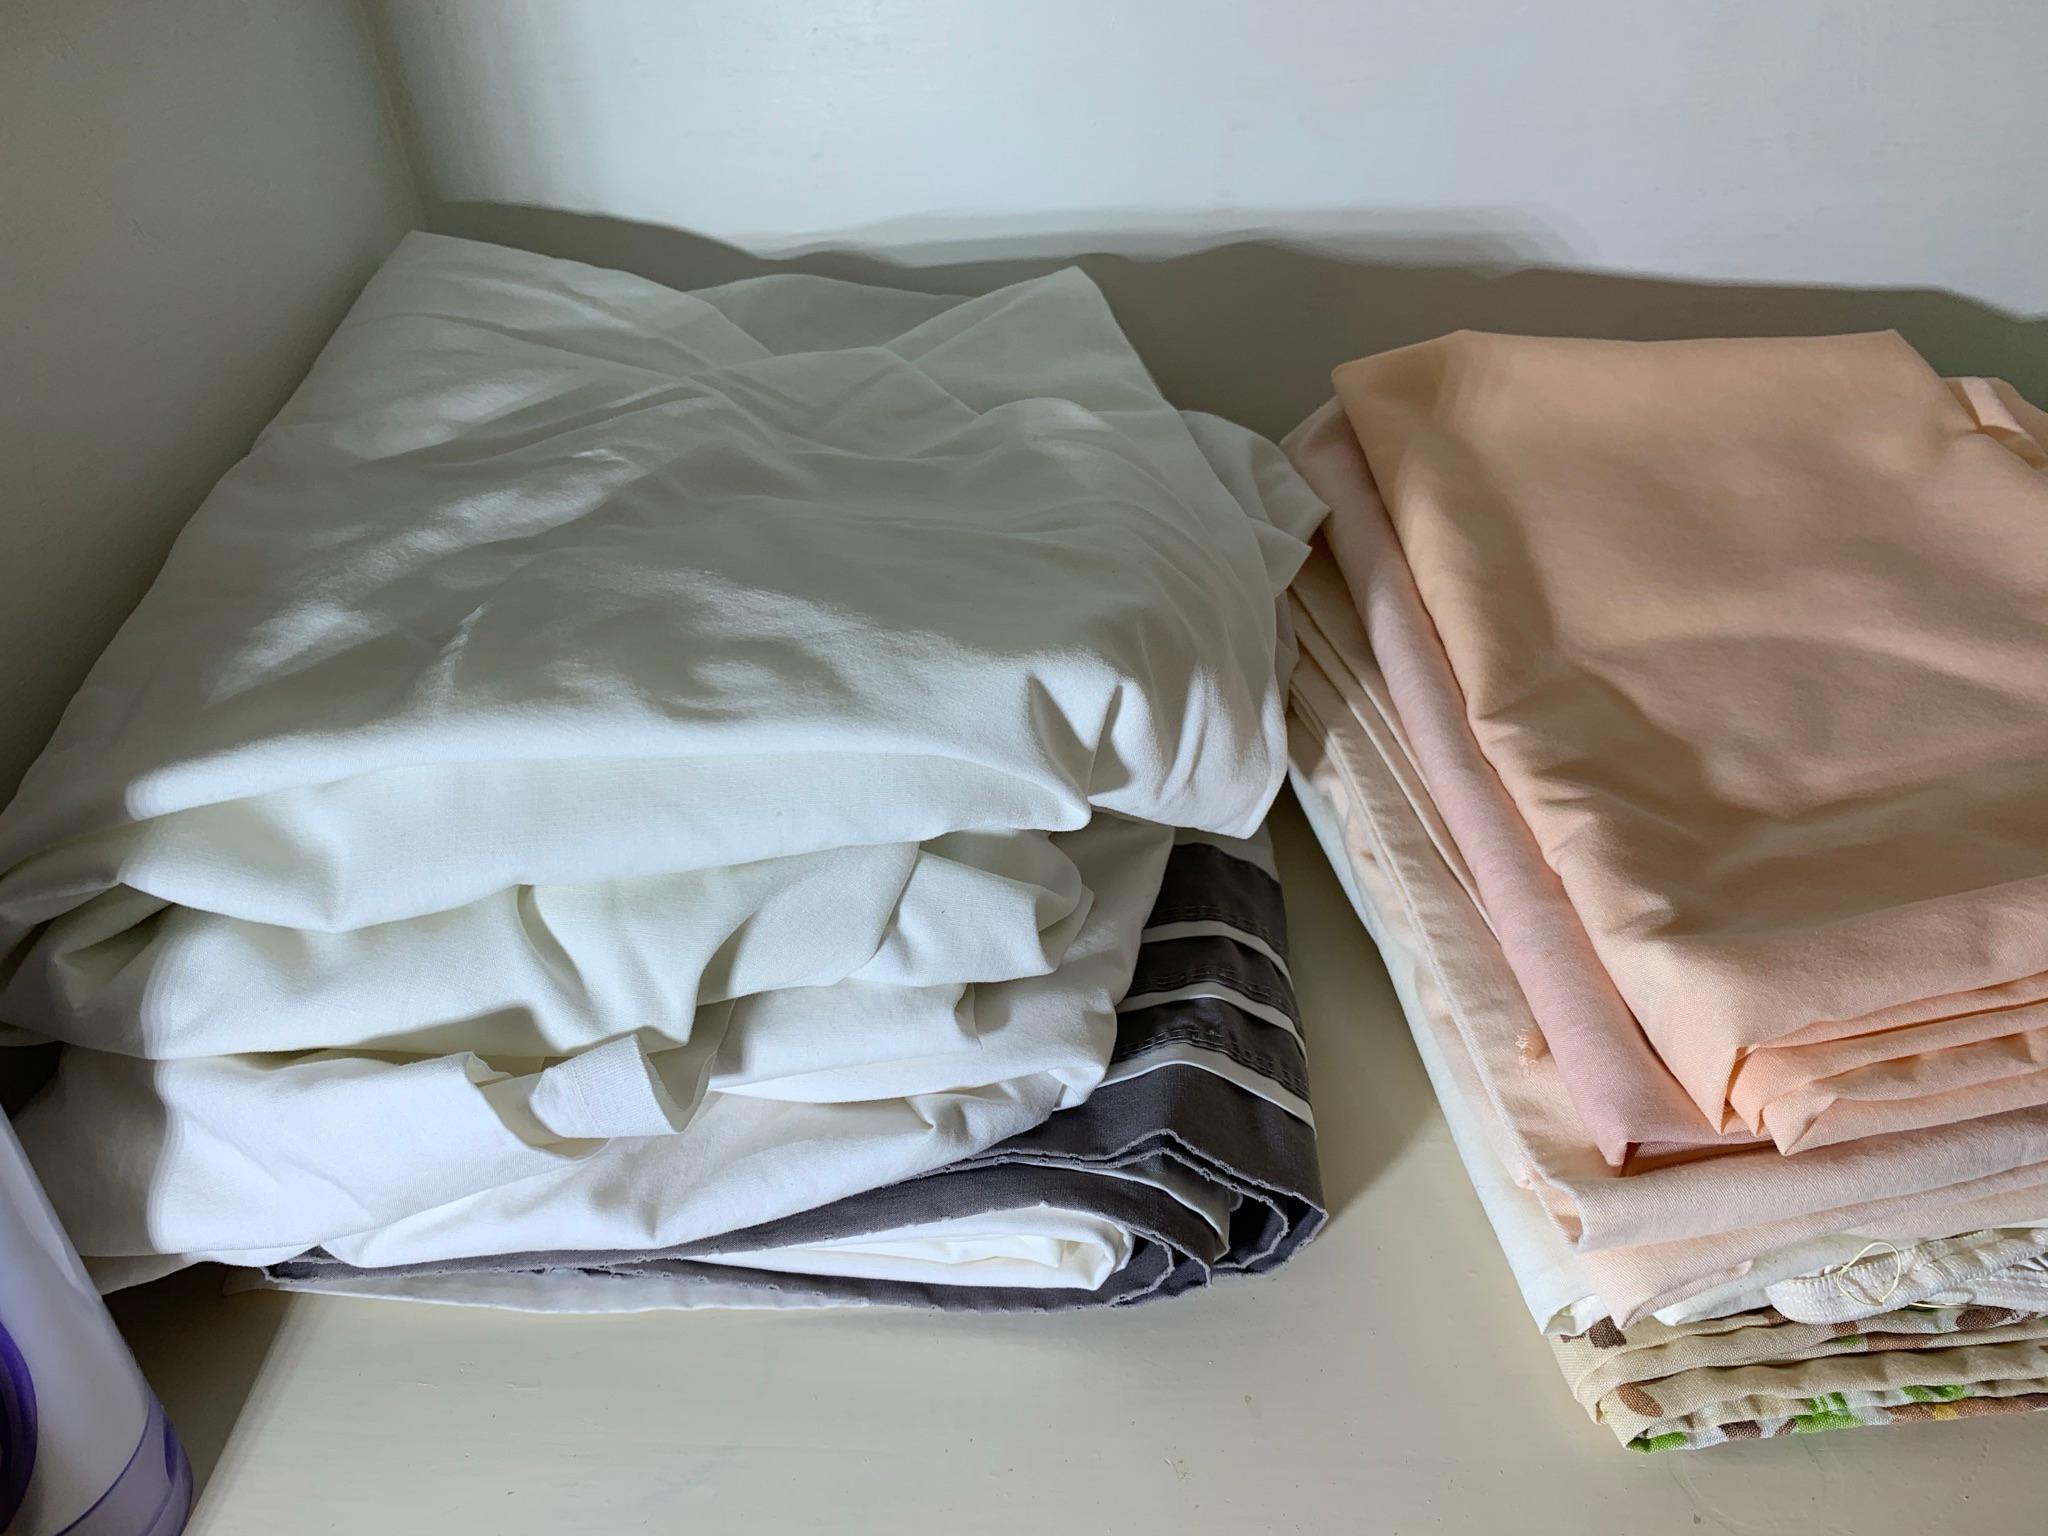 Contents of Bathroom Closet - Towels, Wash Cloths, Pillow Cases, Sheets & Assisting Bar